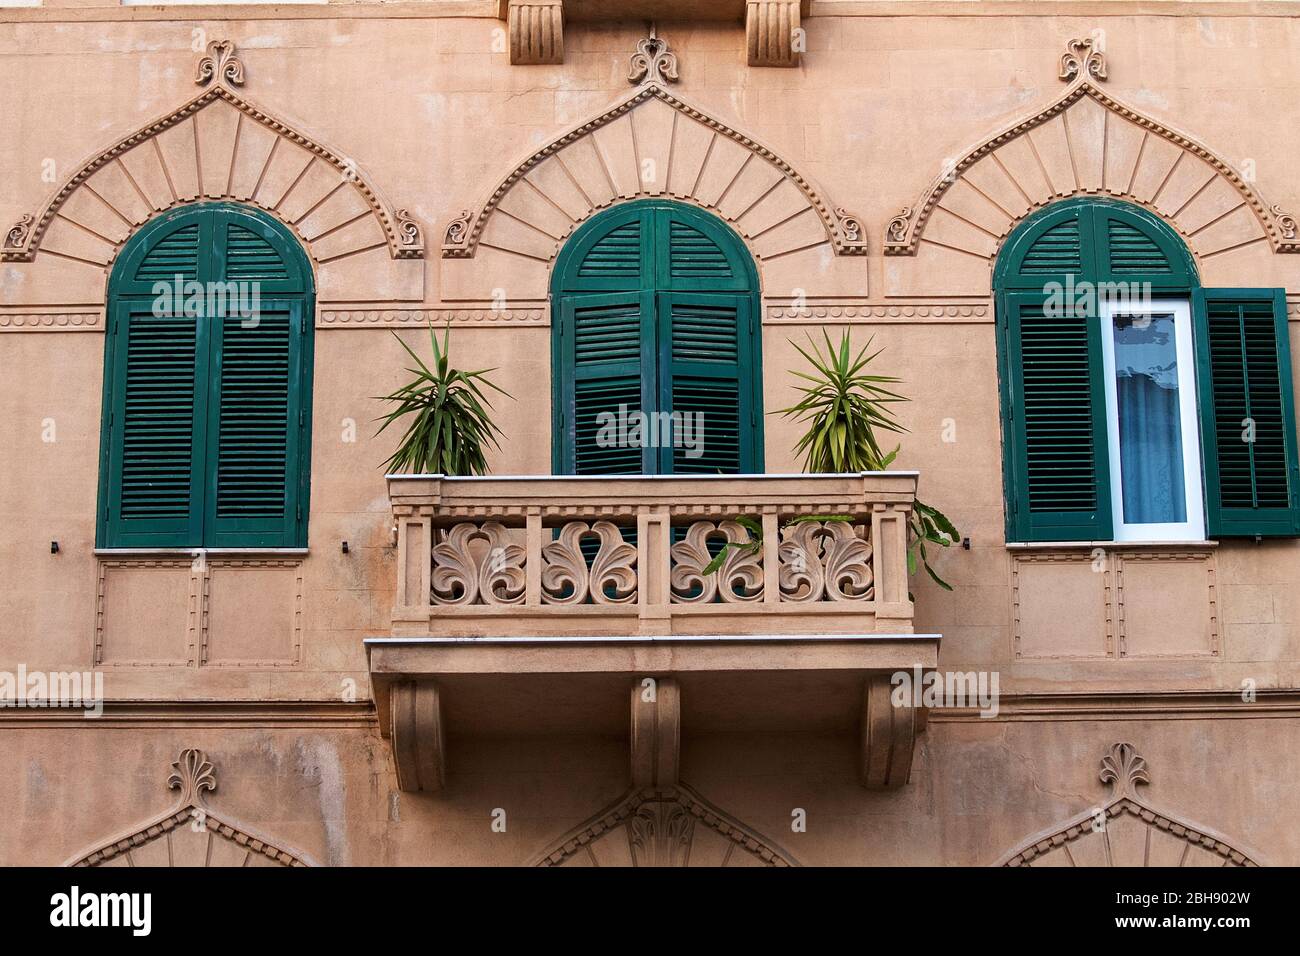 Palermo, casco antiguo, fachada del edificio, estilo oriental, balcón, tres persianas de arco verde, ornamentos orientales, palmeras Foto de stock